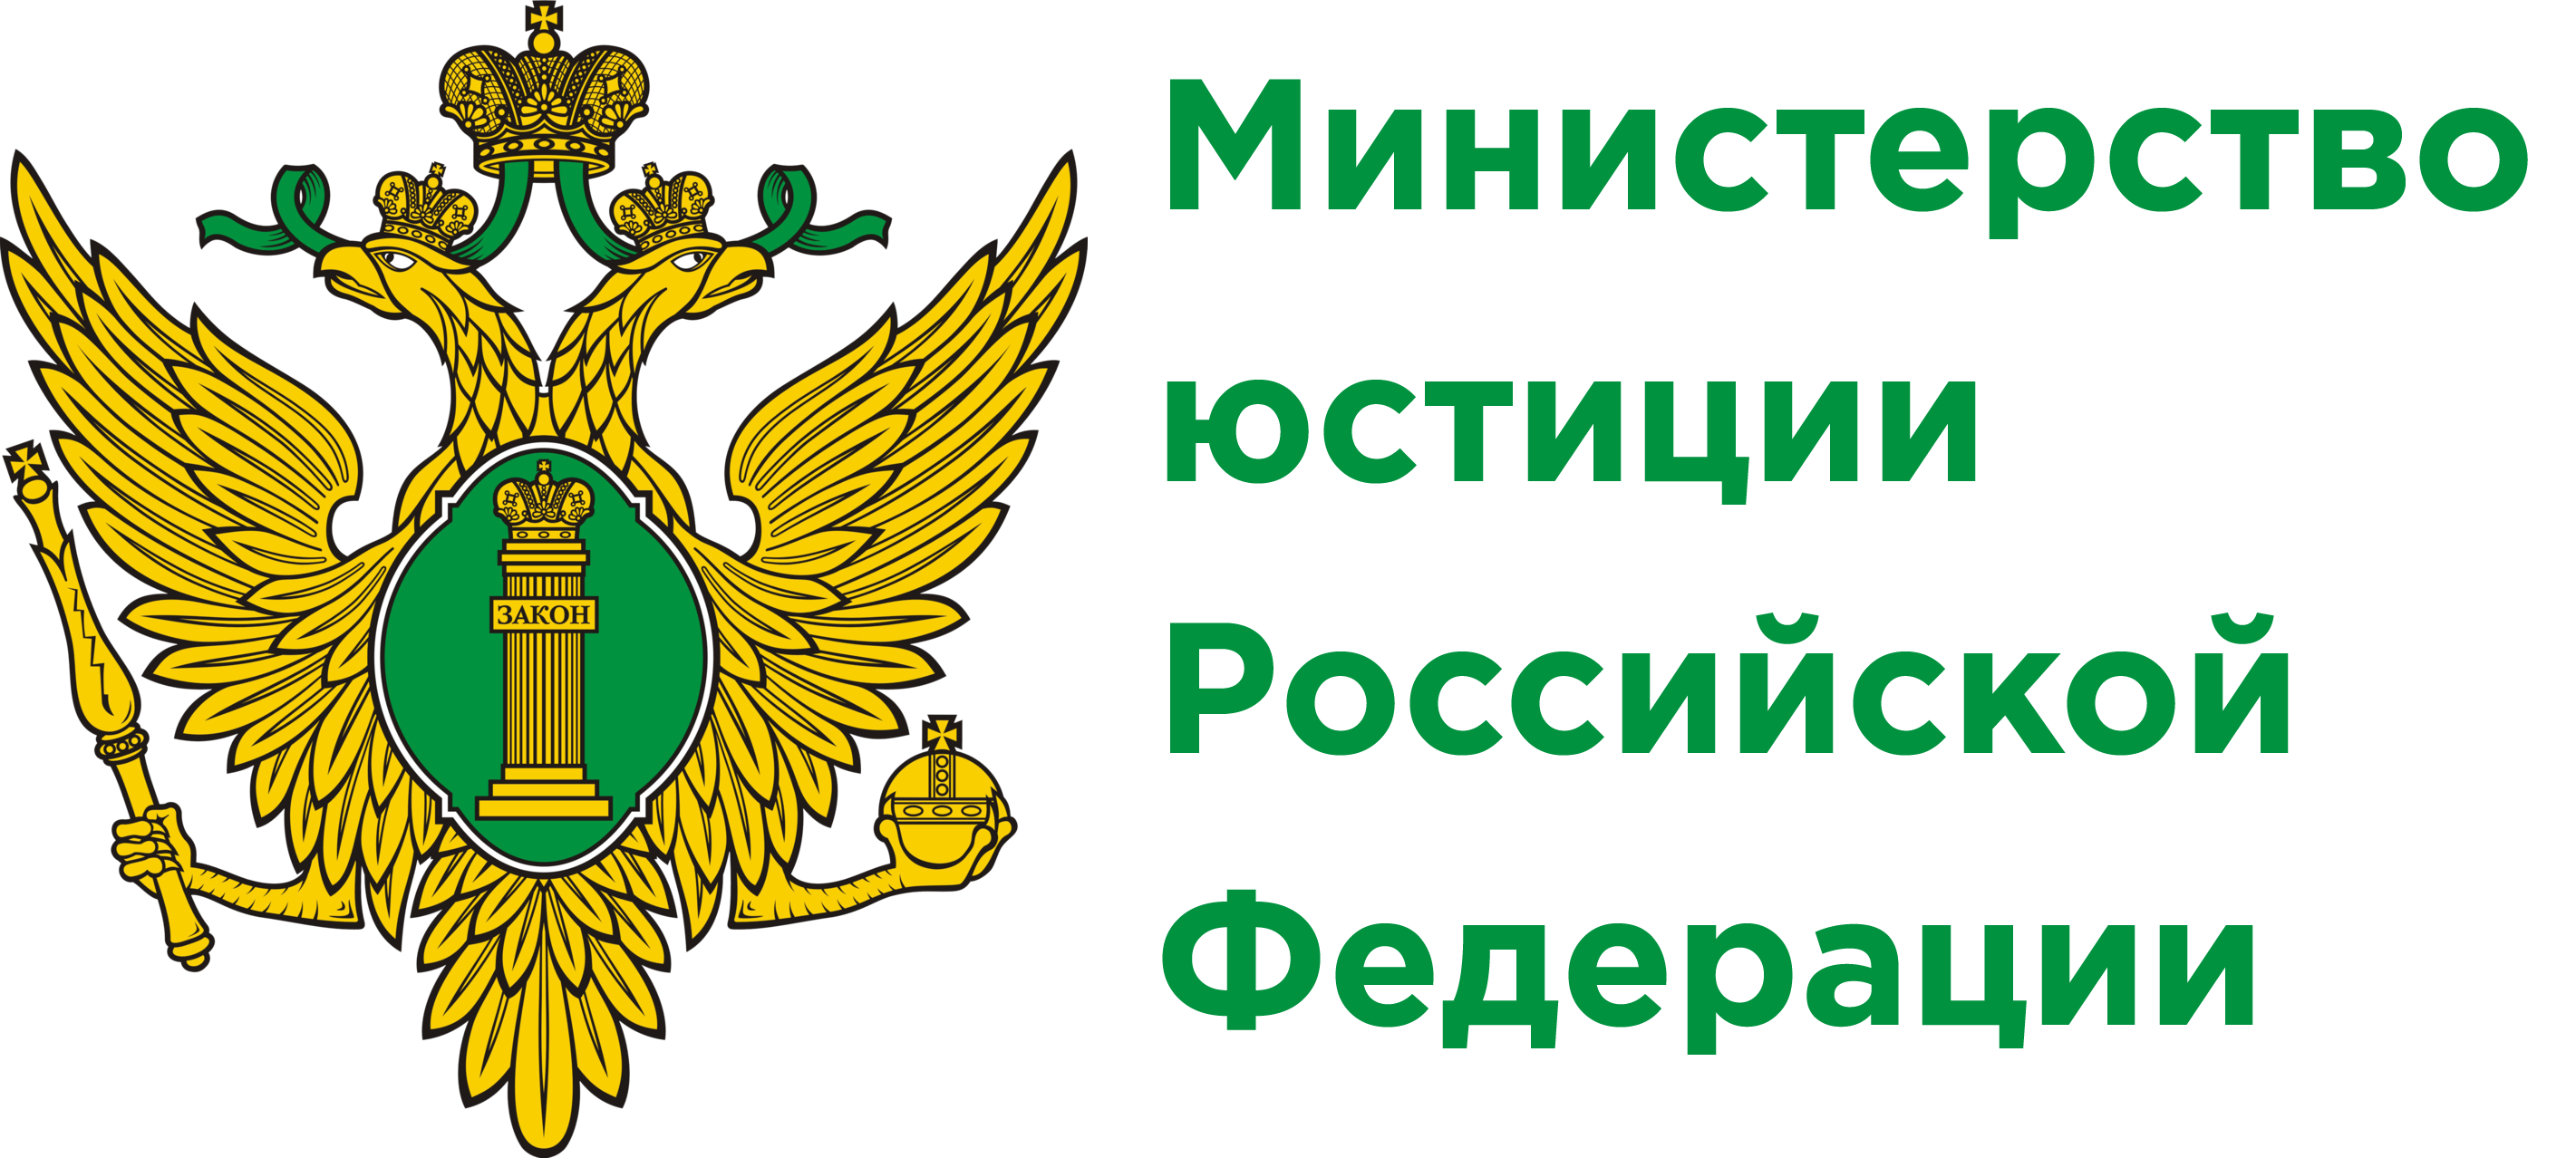 Установлены сроки предоставления отчетных сведений некоммерческими организациями за 2022 год в Минюст России и его территориальные органы.